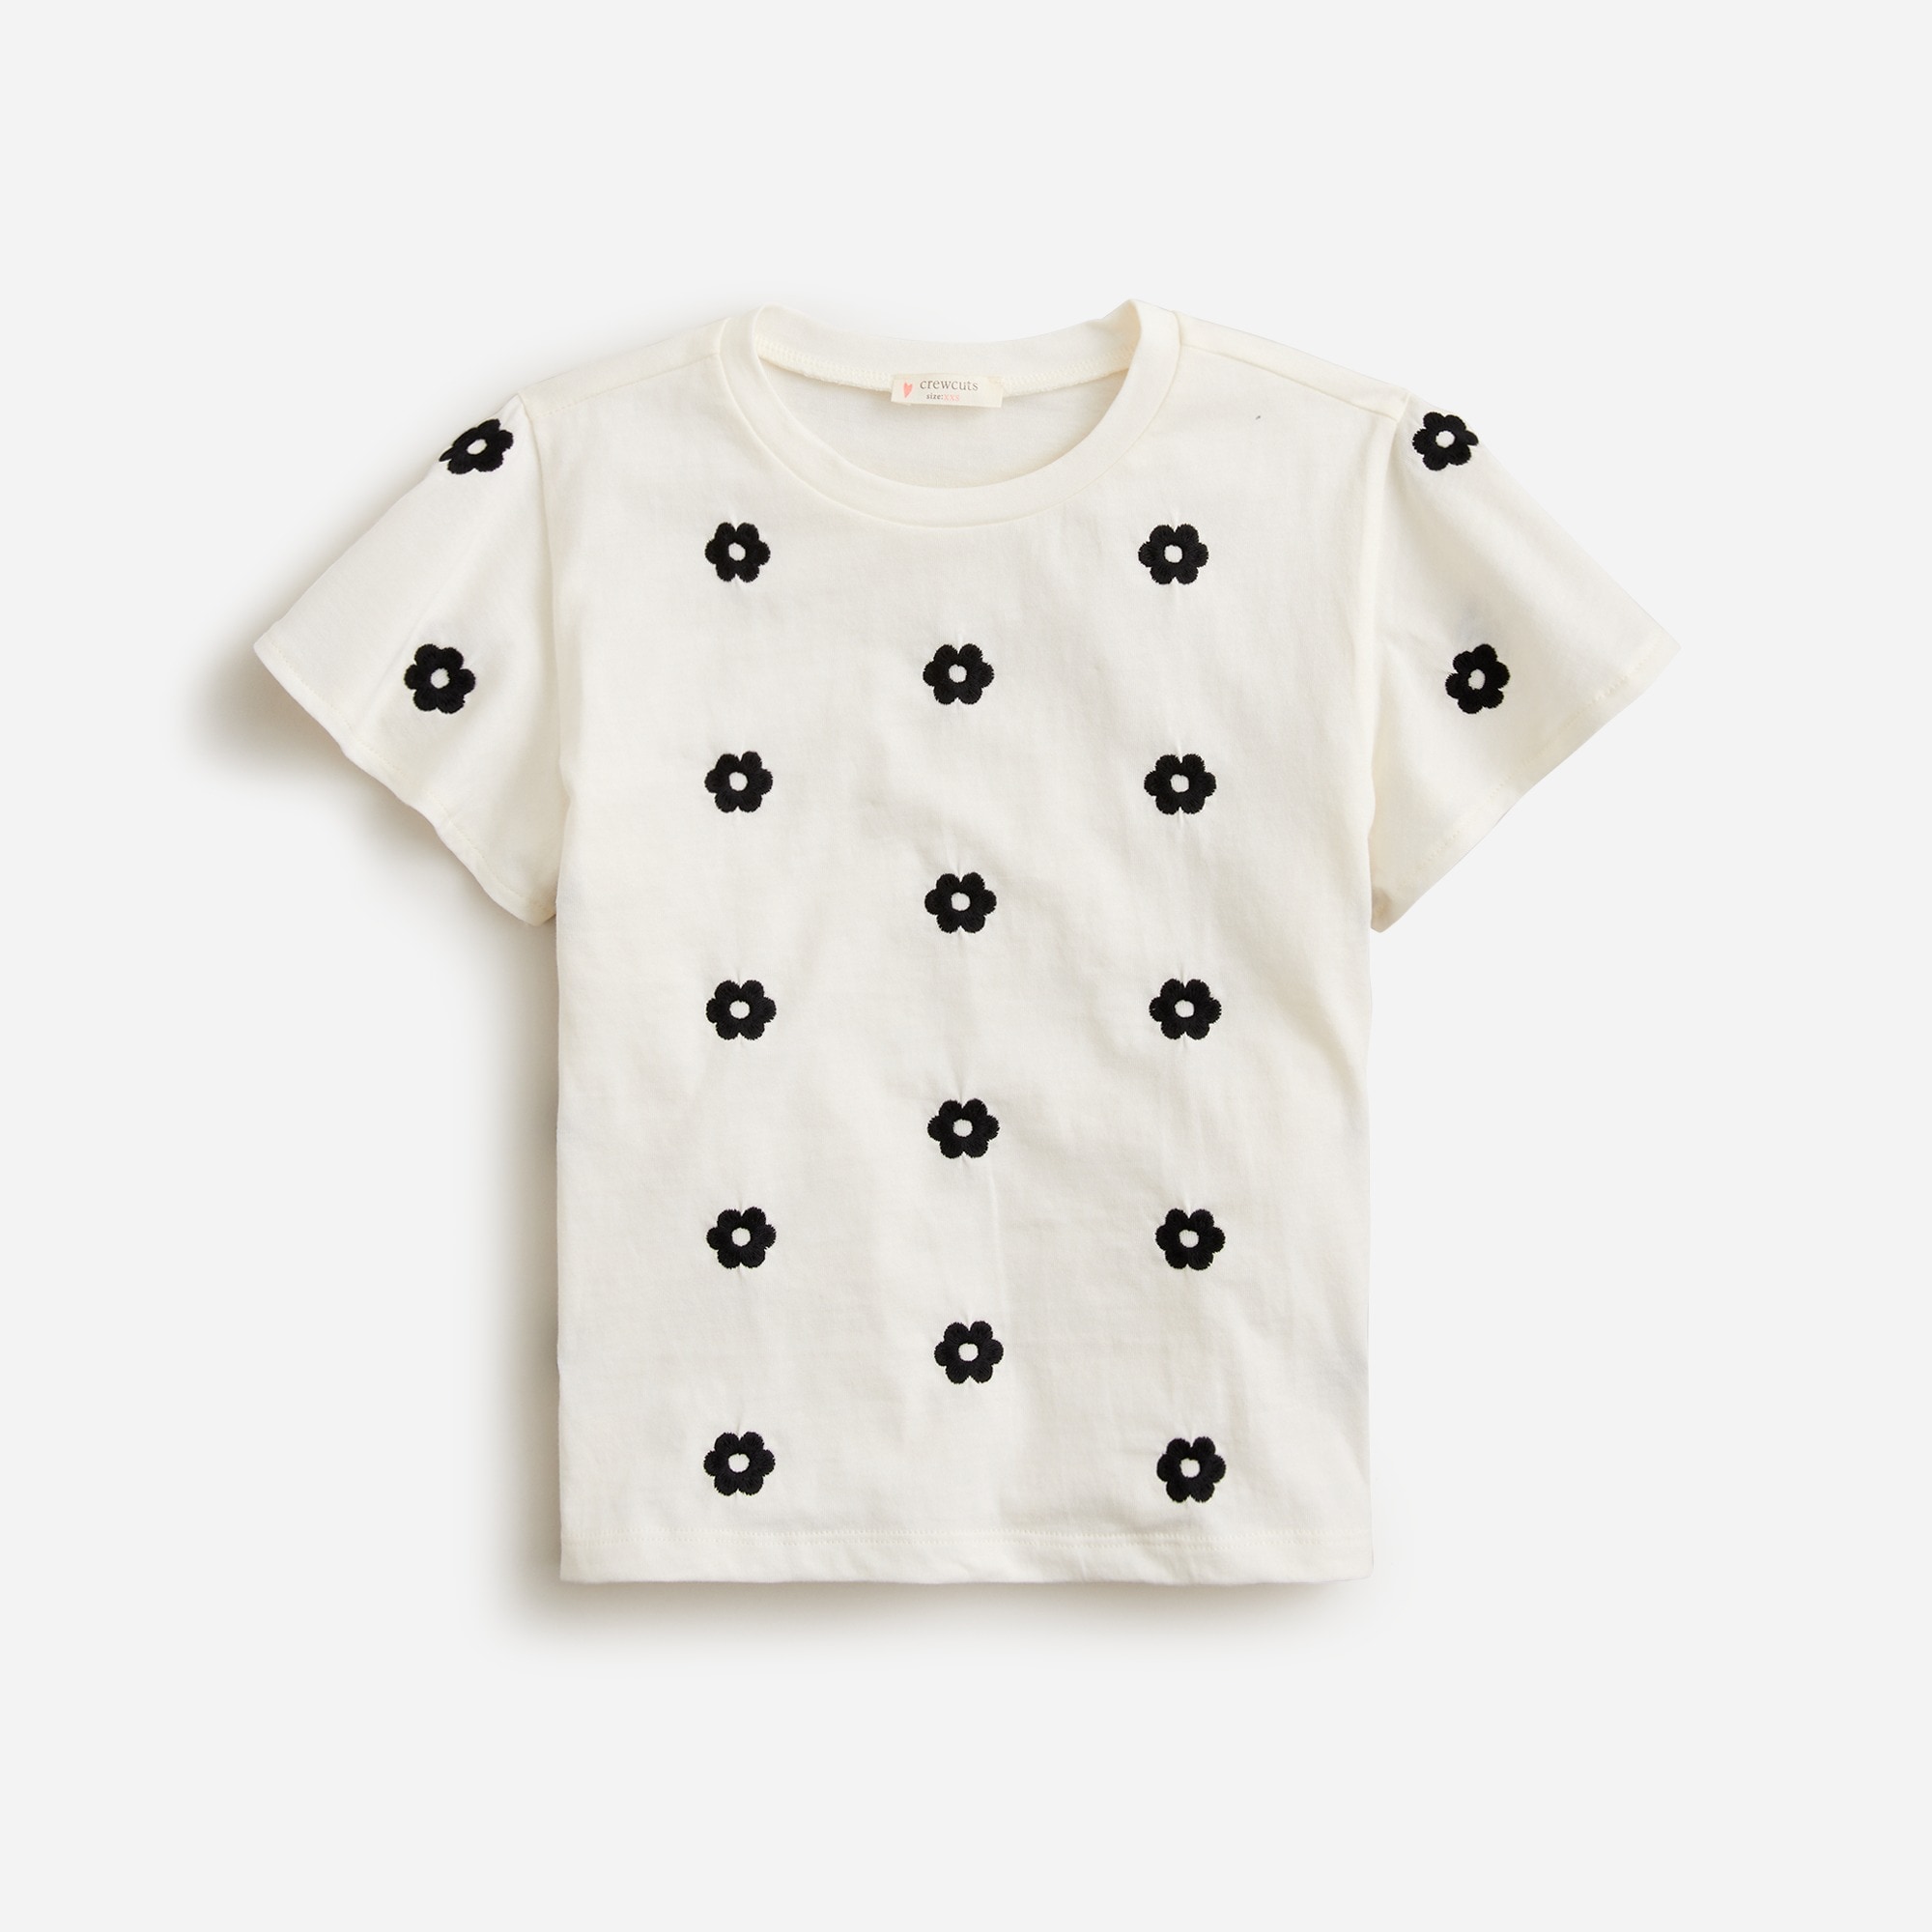  Girls' embroidered flutter-sleeve T-shirt